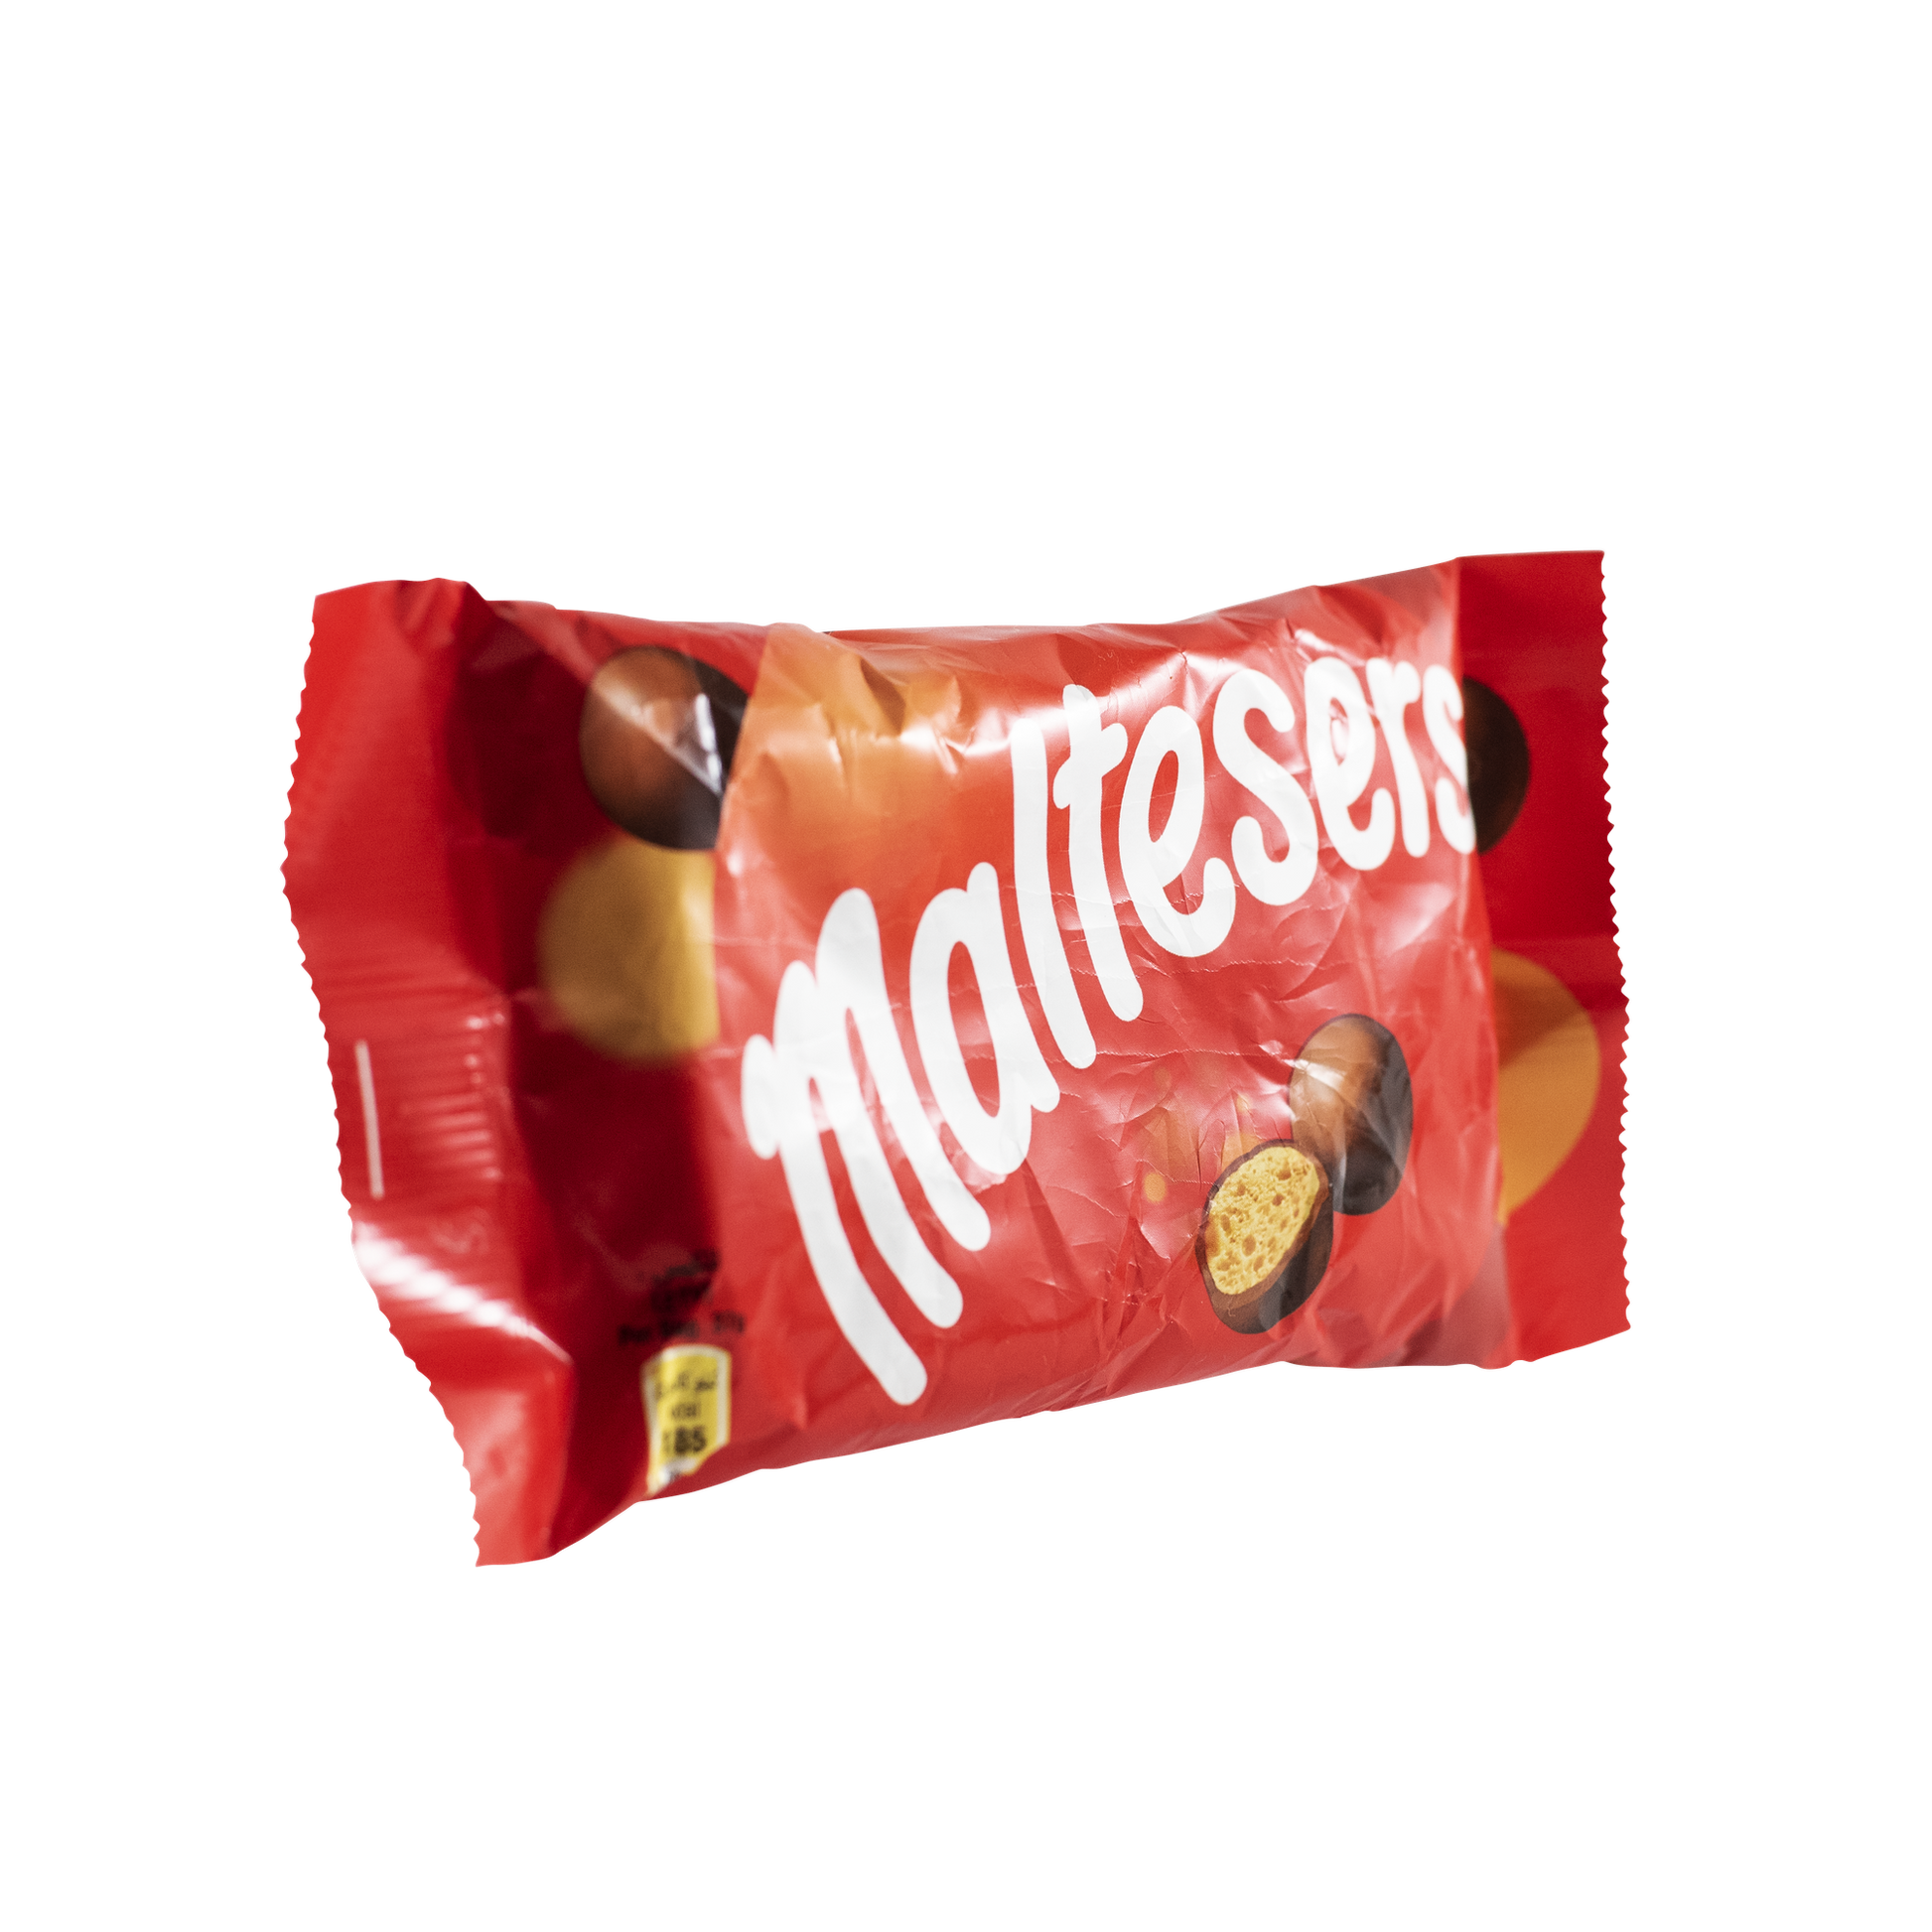 Mars Maltesers (Pack of 3) - 3.9 oz / 111 g